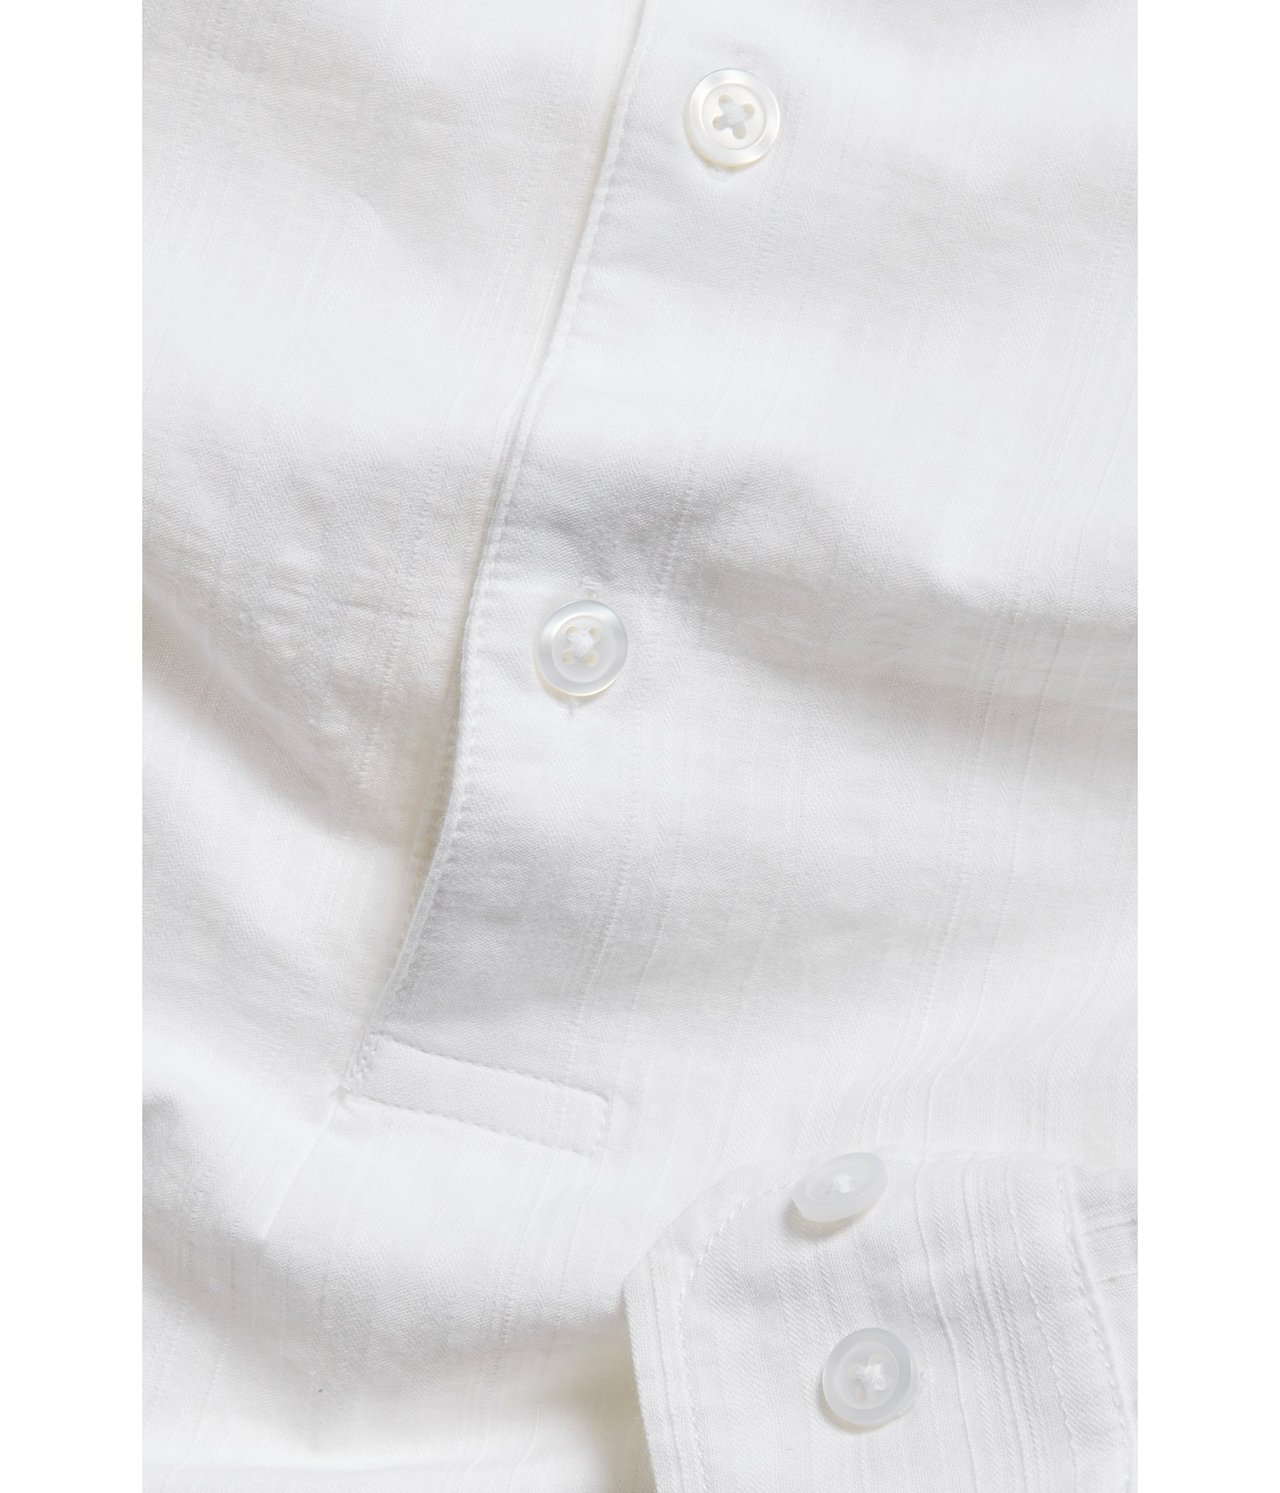 Skjorte med murerkrage Hvit - null - 6